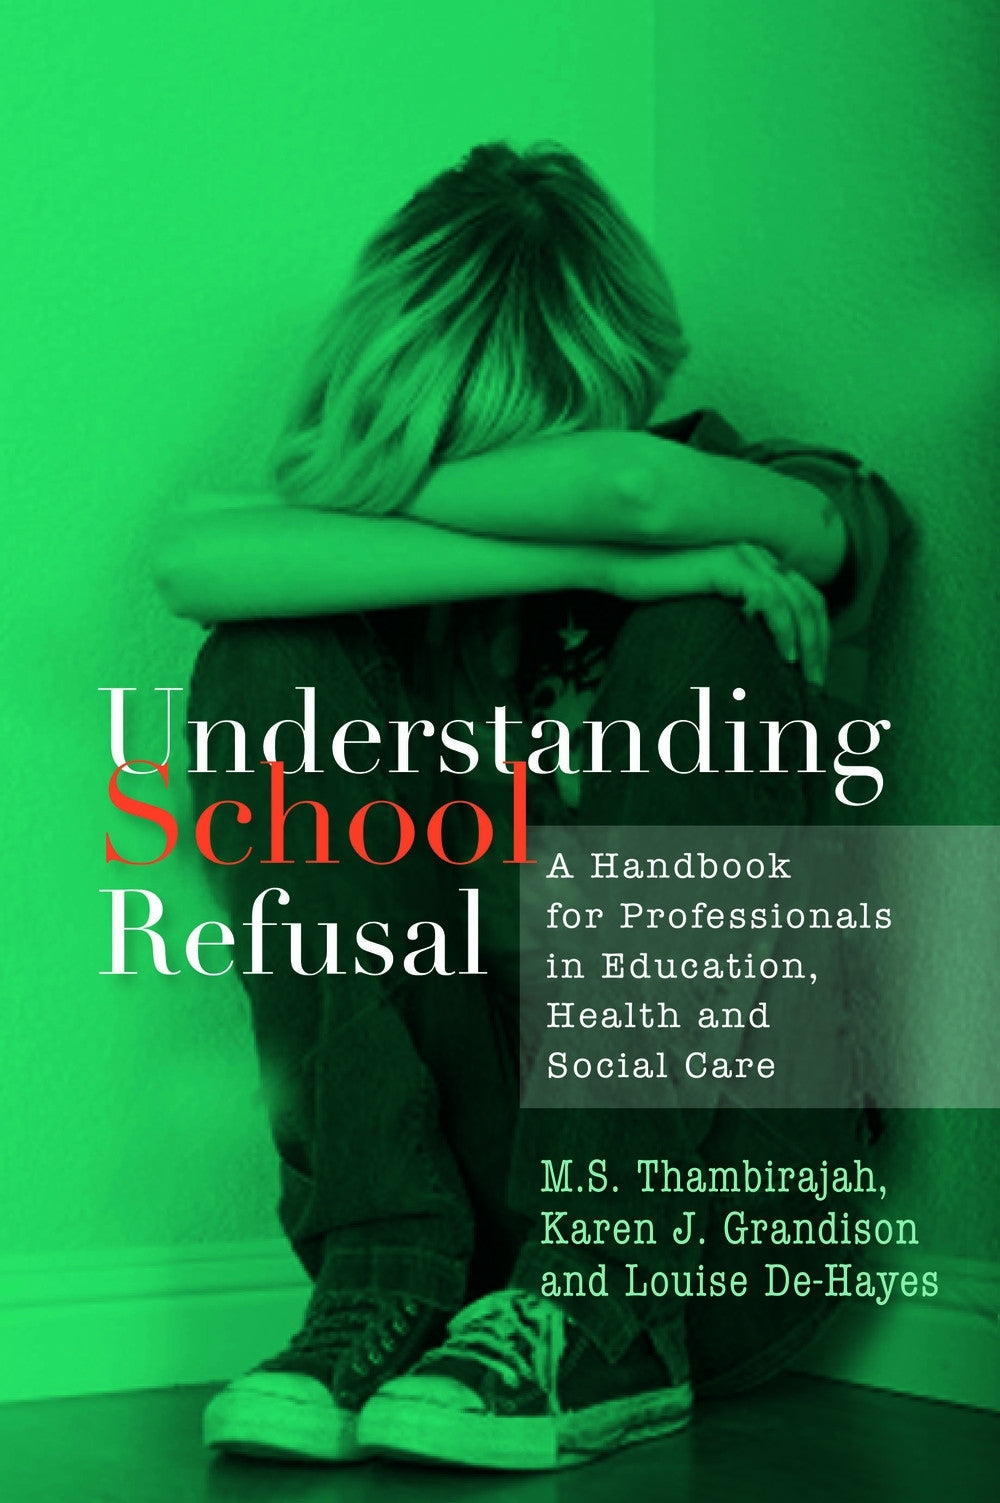 Understanding School Refusal by Karen J. Grandison, Louise De-Hayes, M. S. Thambirajah